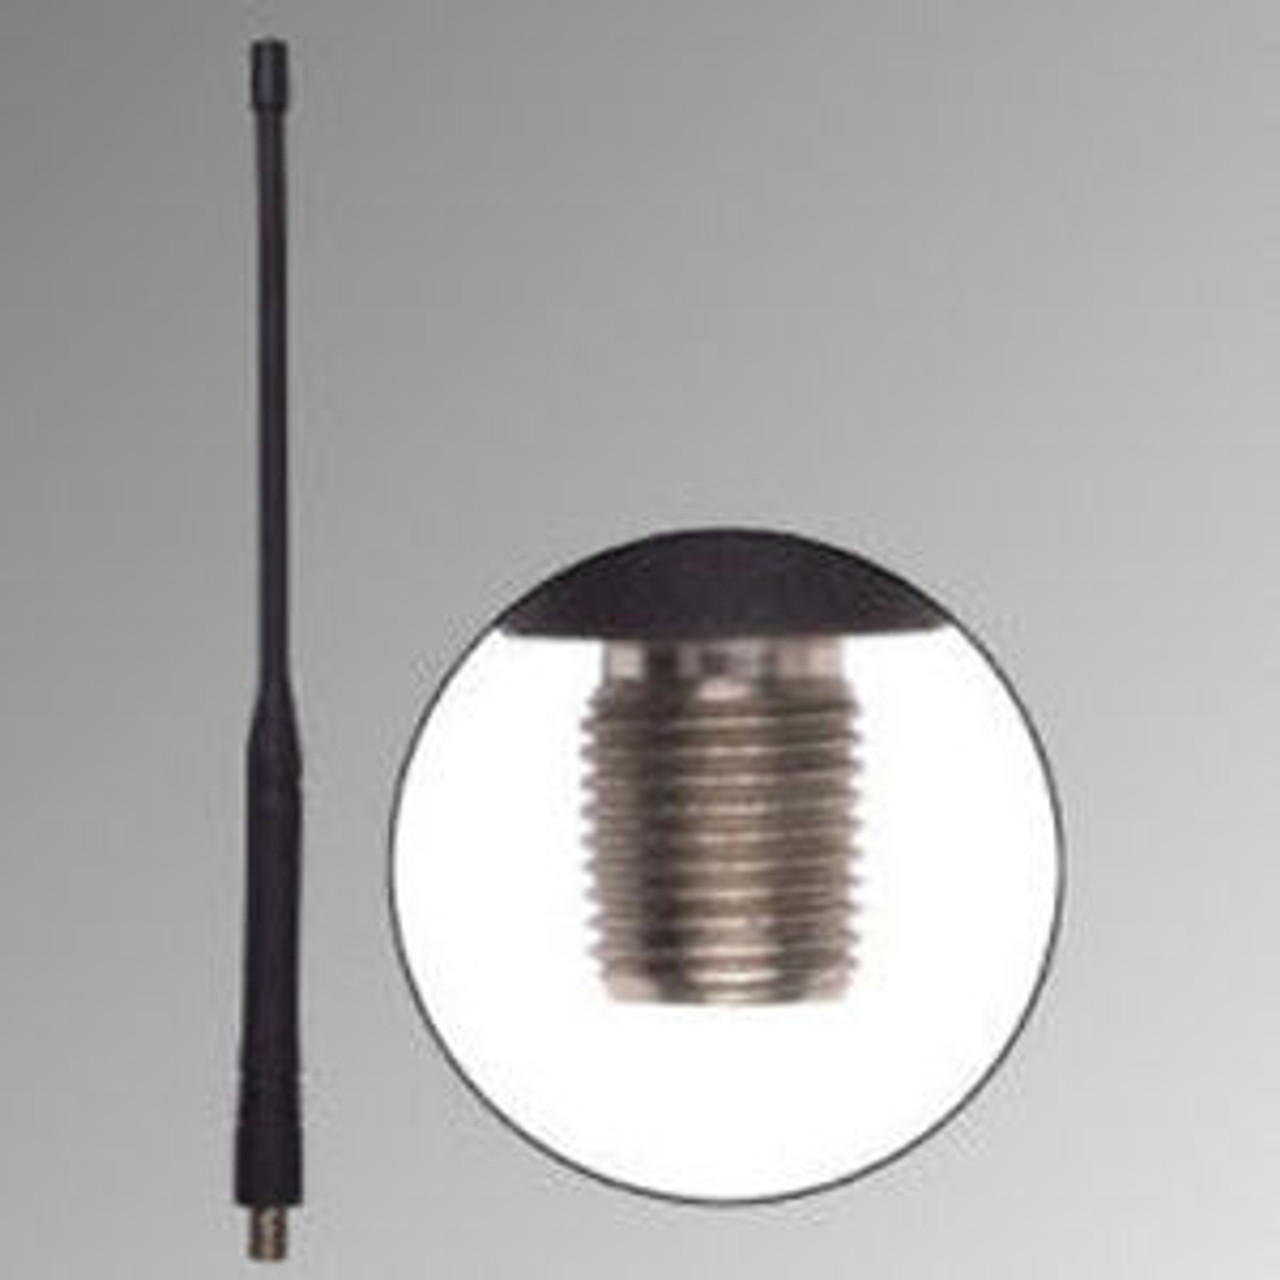 Bendix King DPH Long Range Antenna - 10.5", VHF, 145-155 MHz